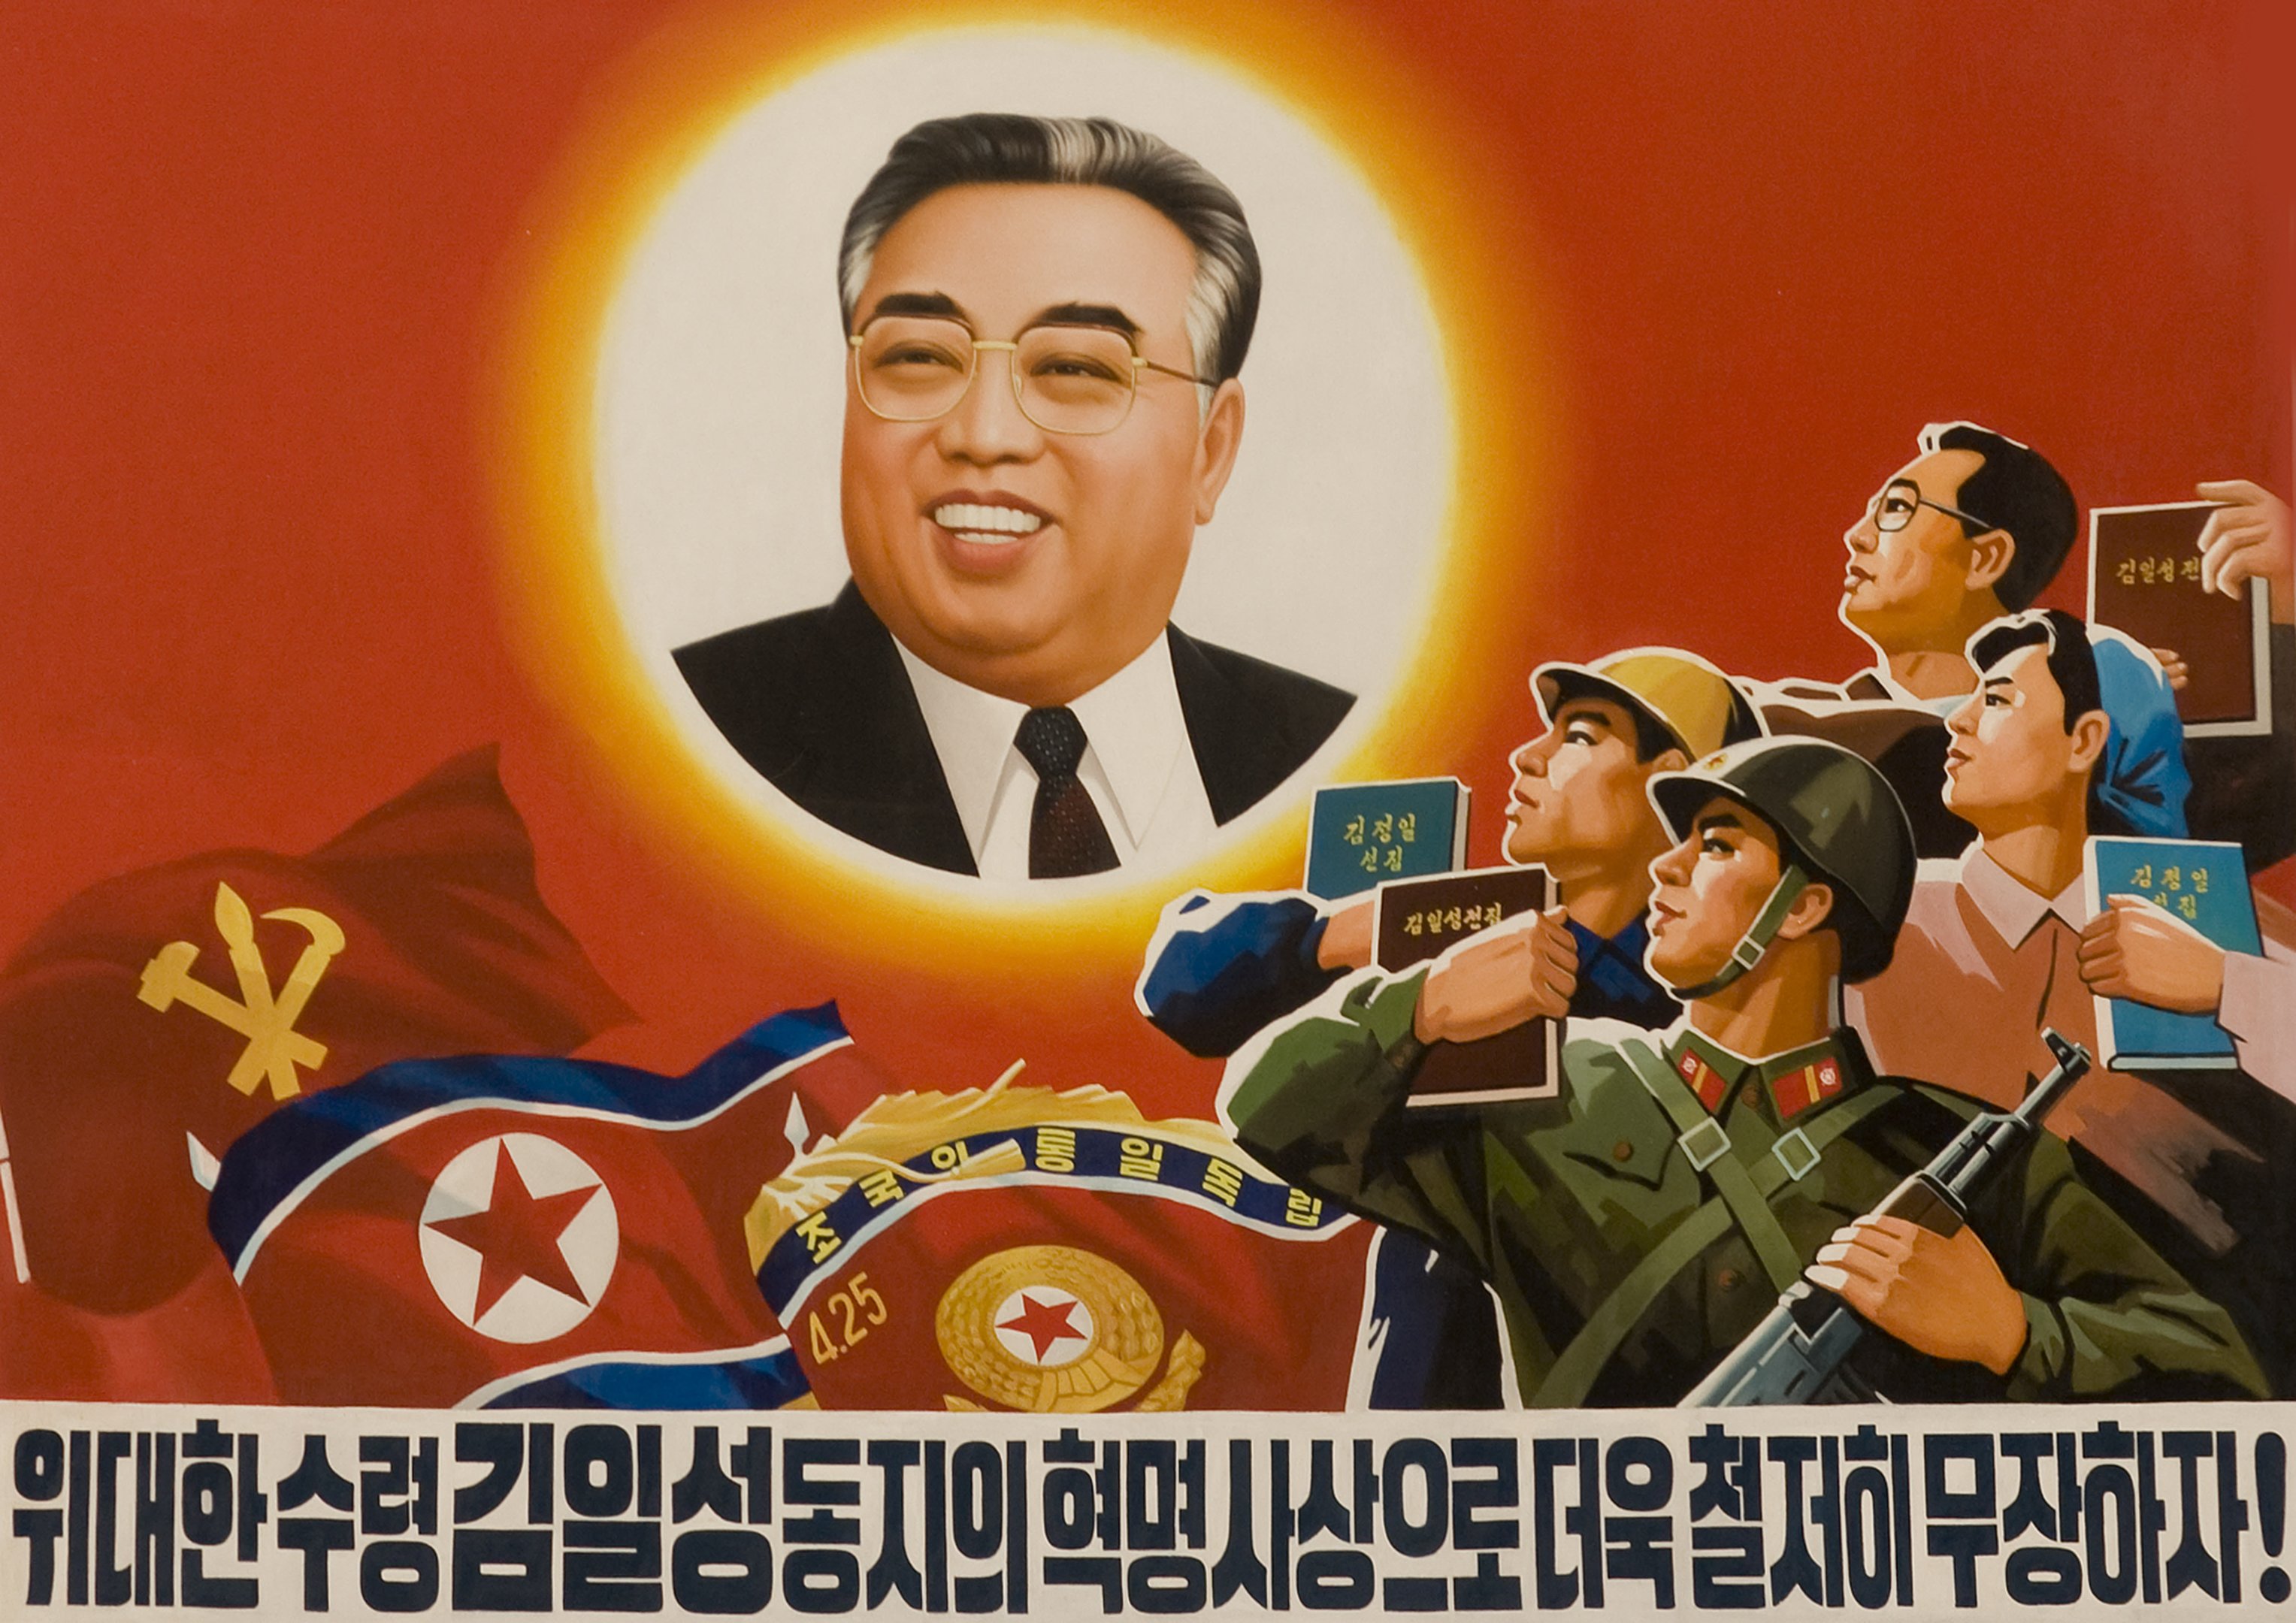 O avô de Kim Jong-un, chamado Kim Il-Sung, comandou uma revolução para implantar o comunismo na Coreia, em 1948. Isso levou a Península à uma guerra civil, que terminou na divisão do território em duas partes. Kim governou a Coreia do Norte até sua morte, em 1994.